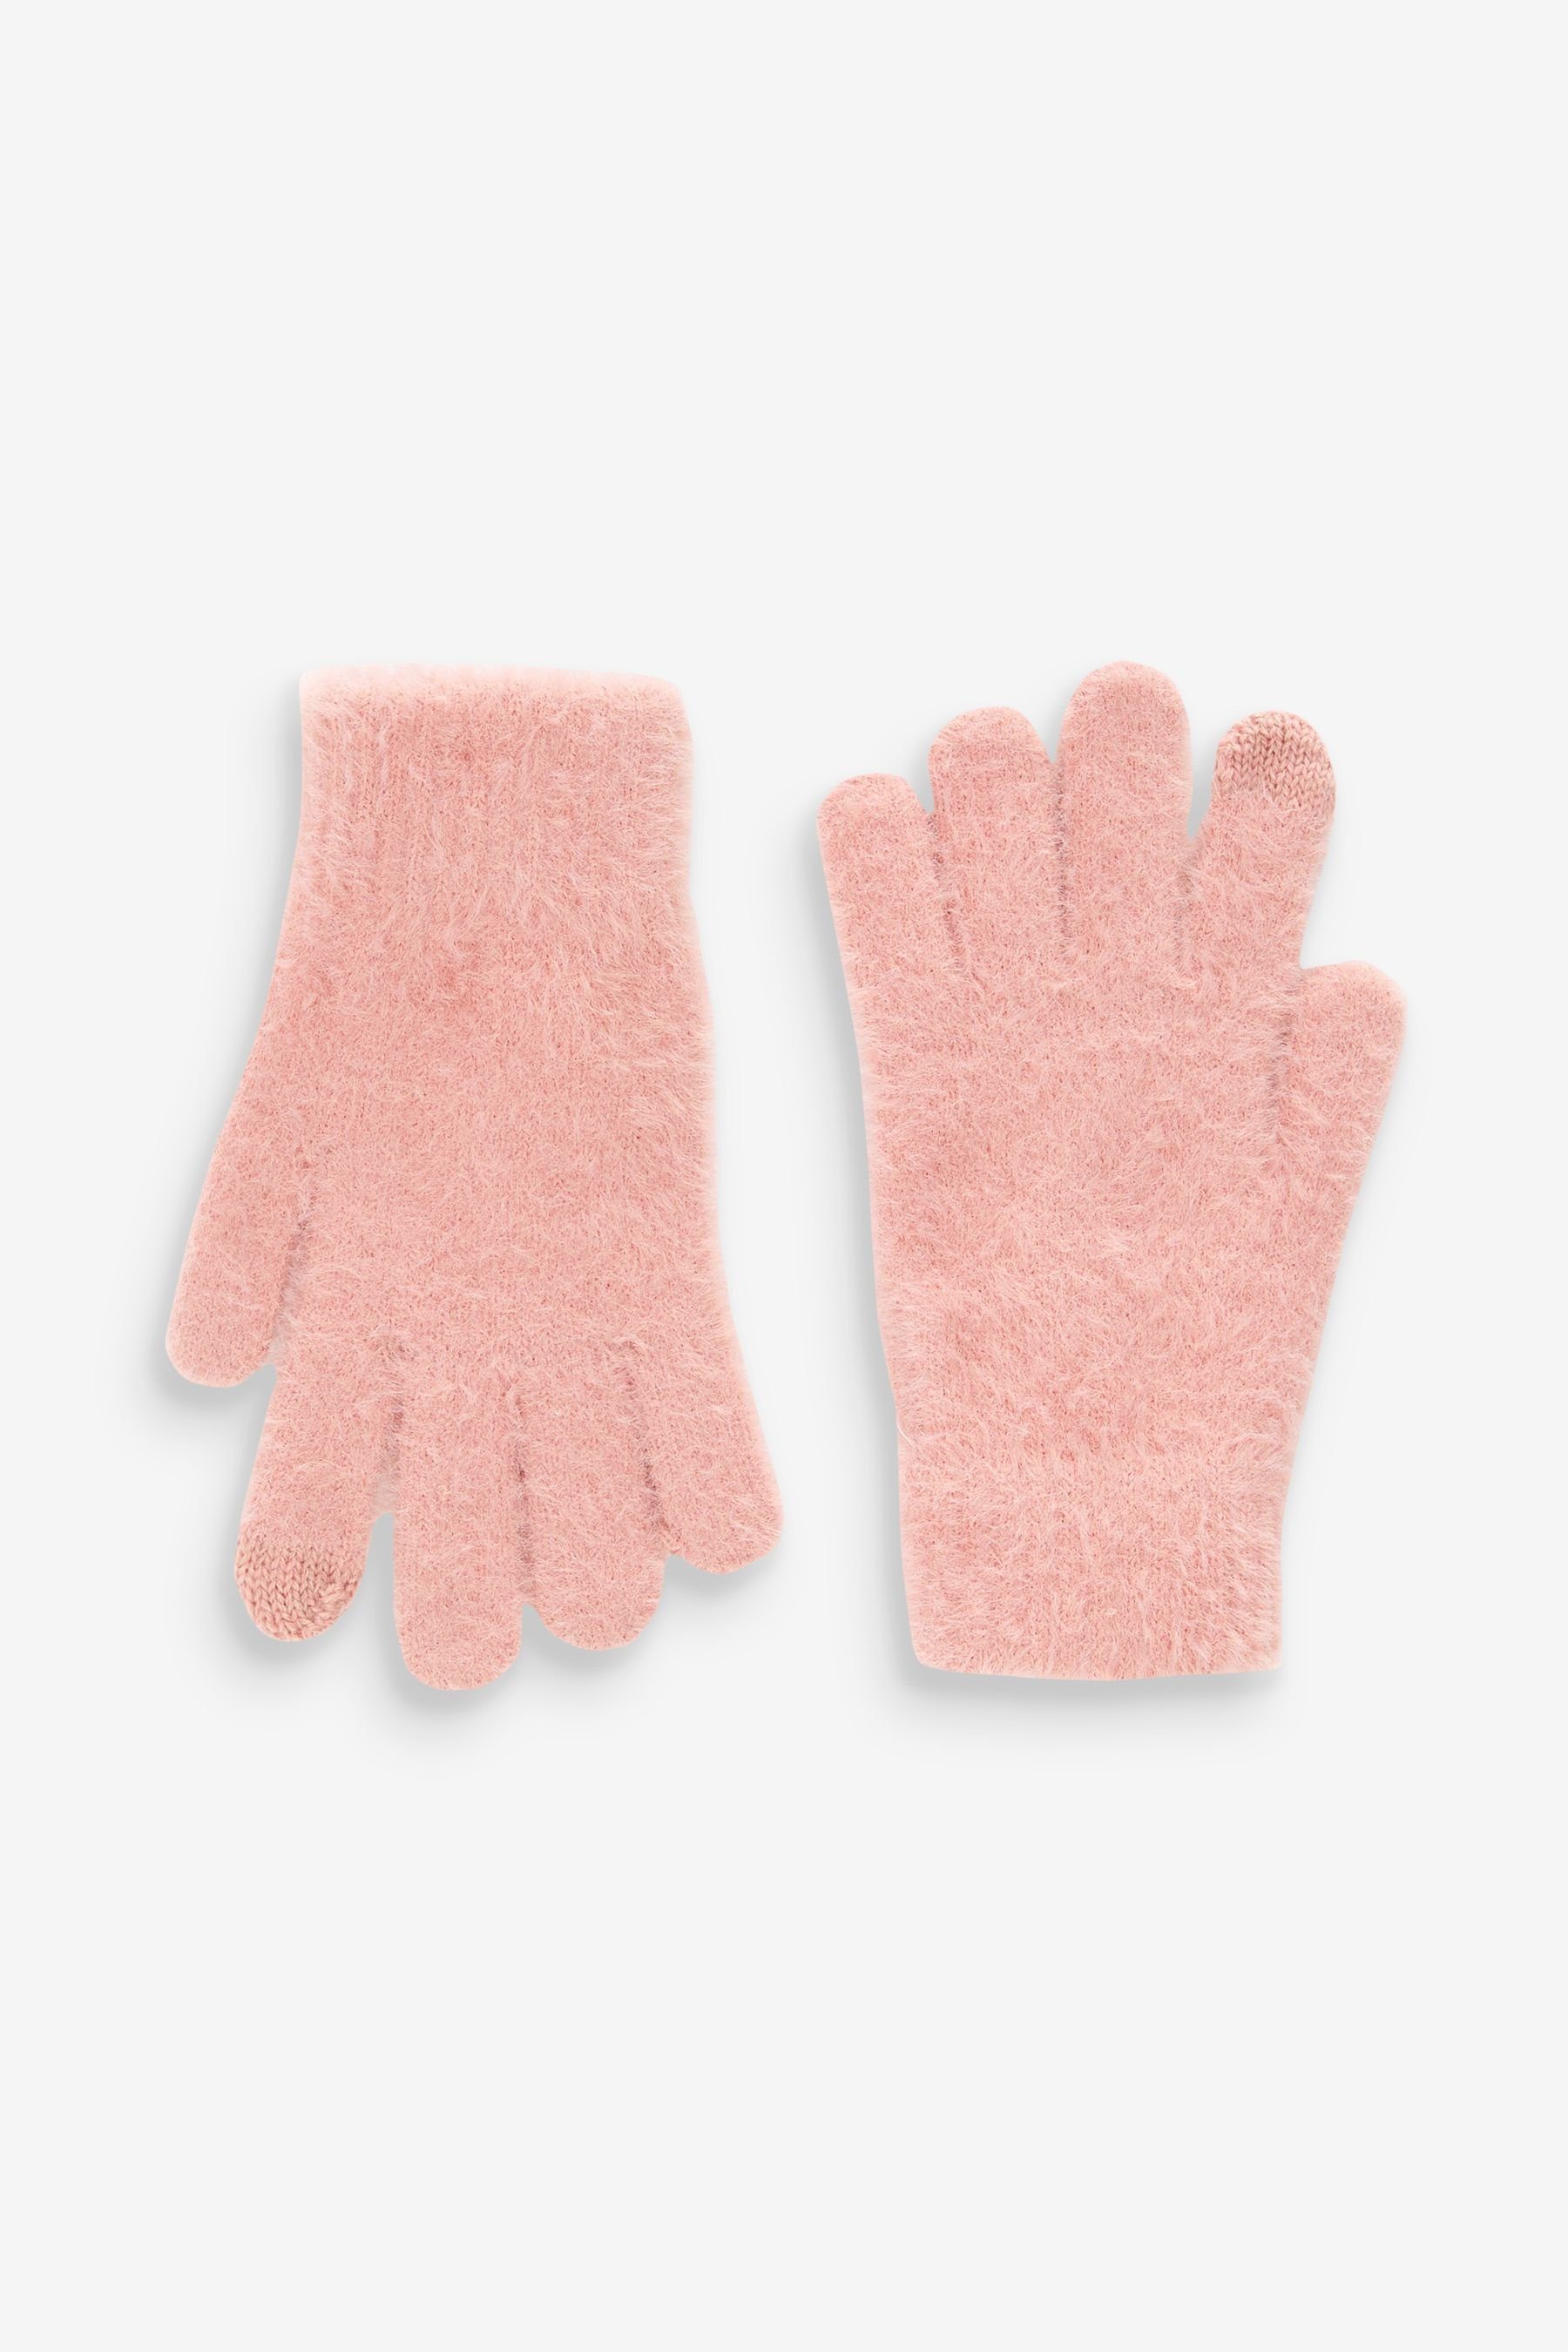 Next Strickhandschuhe Flauschige Handschuhe Pink